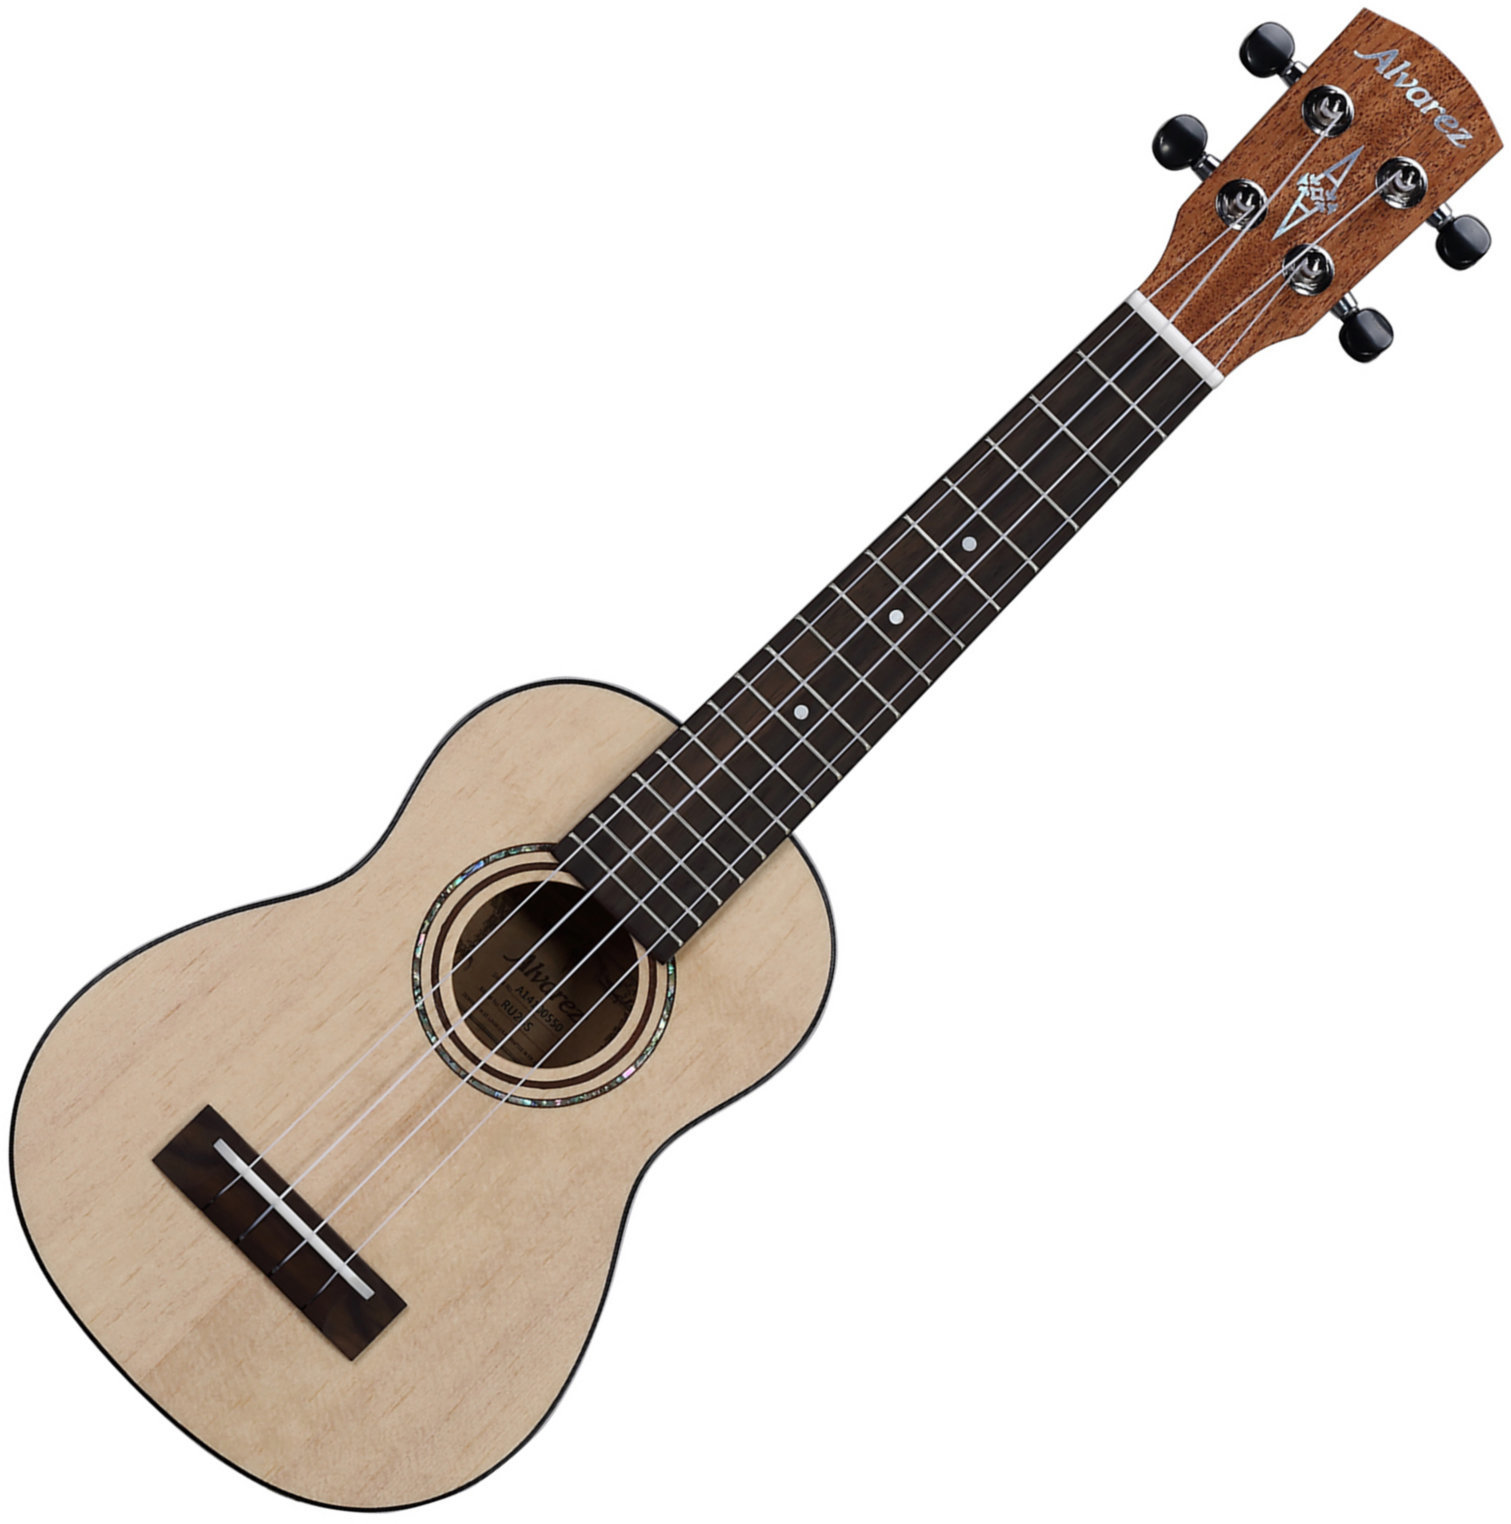 Sopran ukulele Alvarez RU26S Sopran ukulele Natural